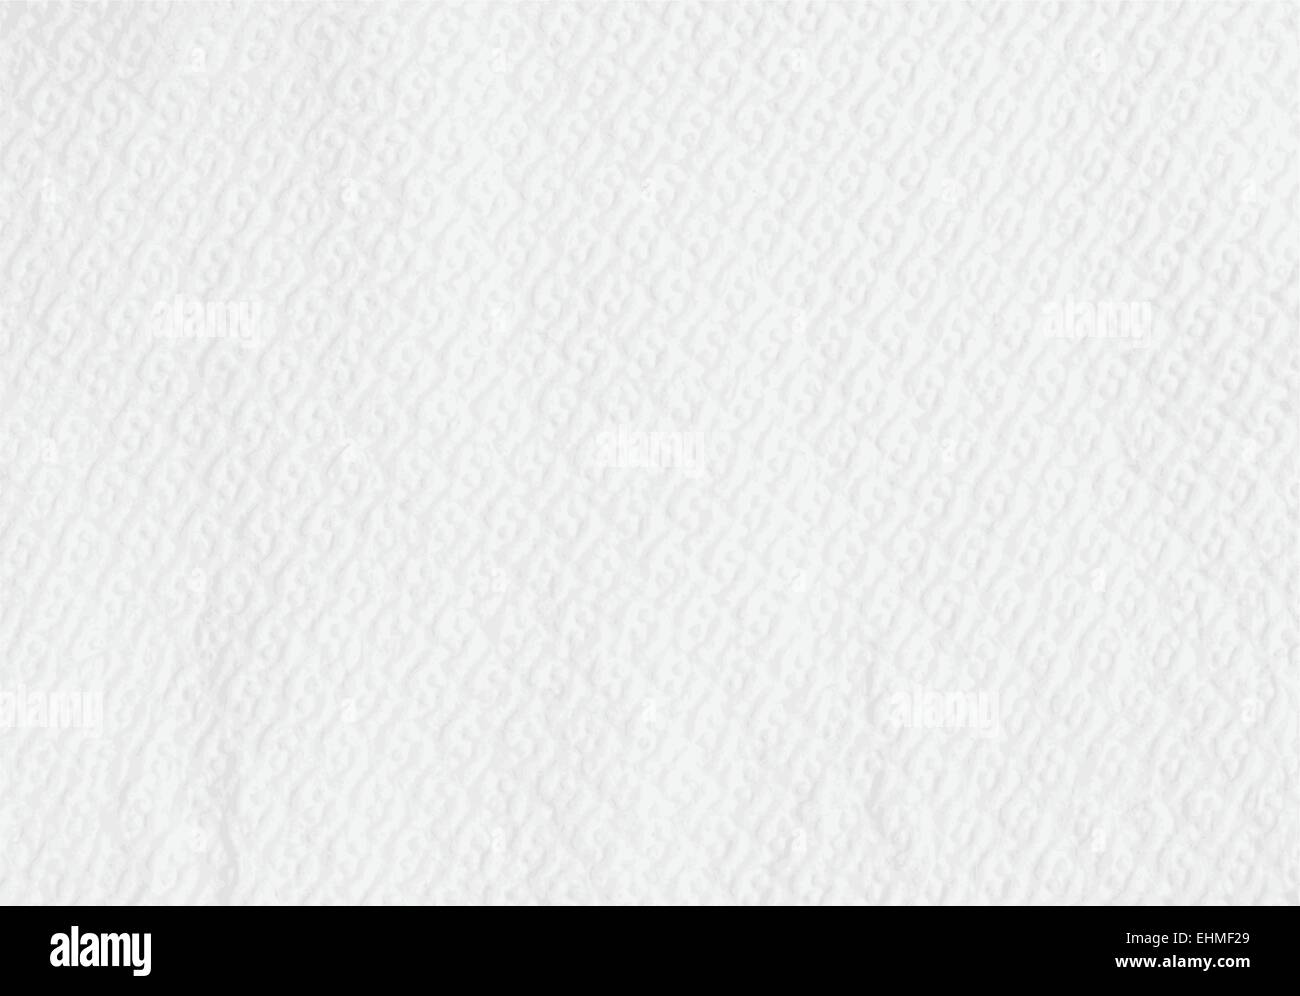 Geprägtem Papier Textur Hintergrund - detaillierte Vektor-Bild Stock Vektor